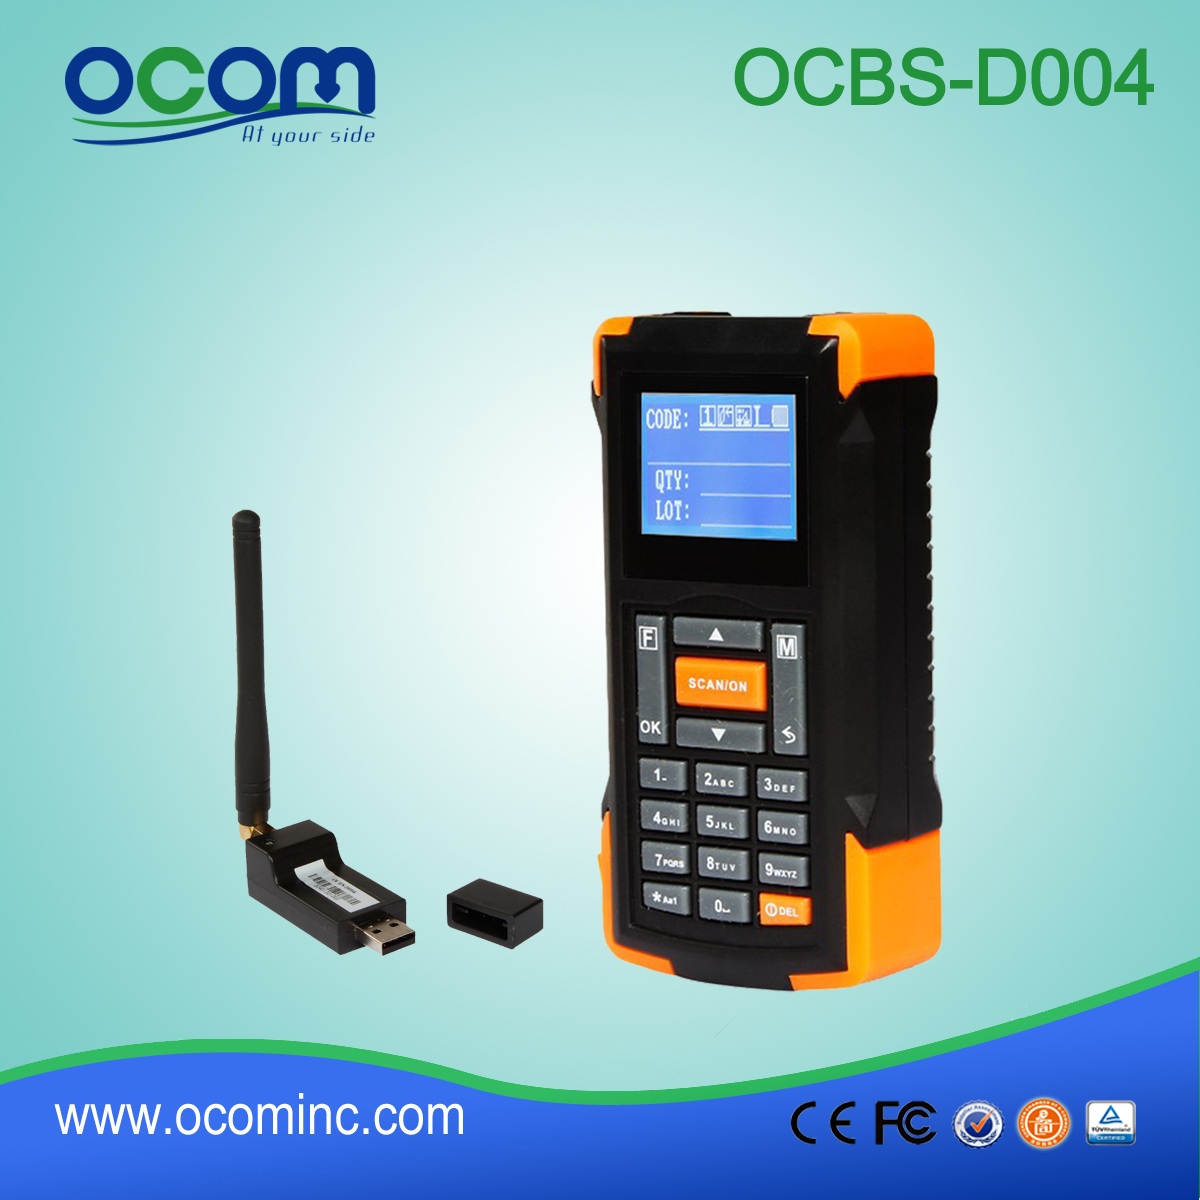 (OCBS-D005) 433Mhz Mini bezprzewodowy czytnik kodów kreskowych z ekranem